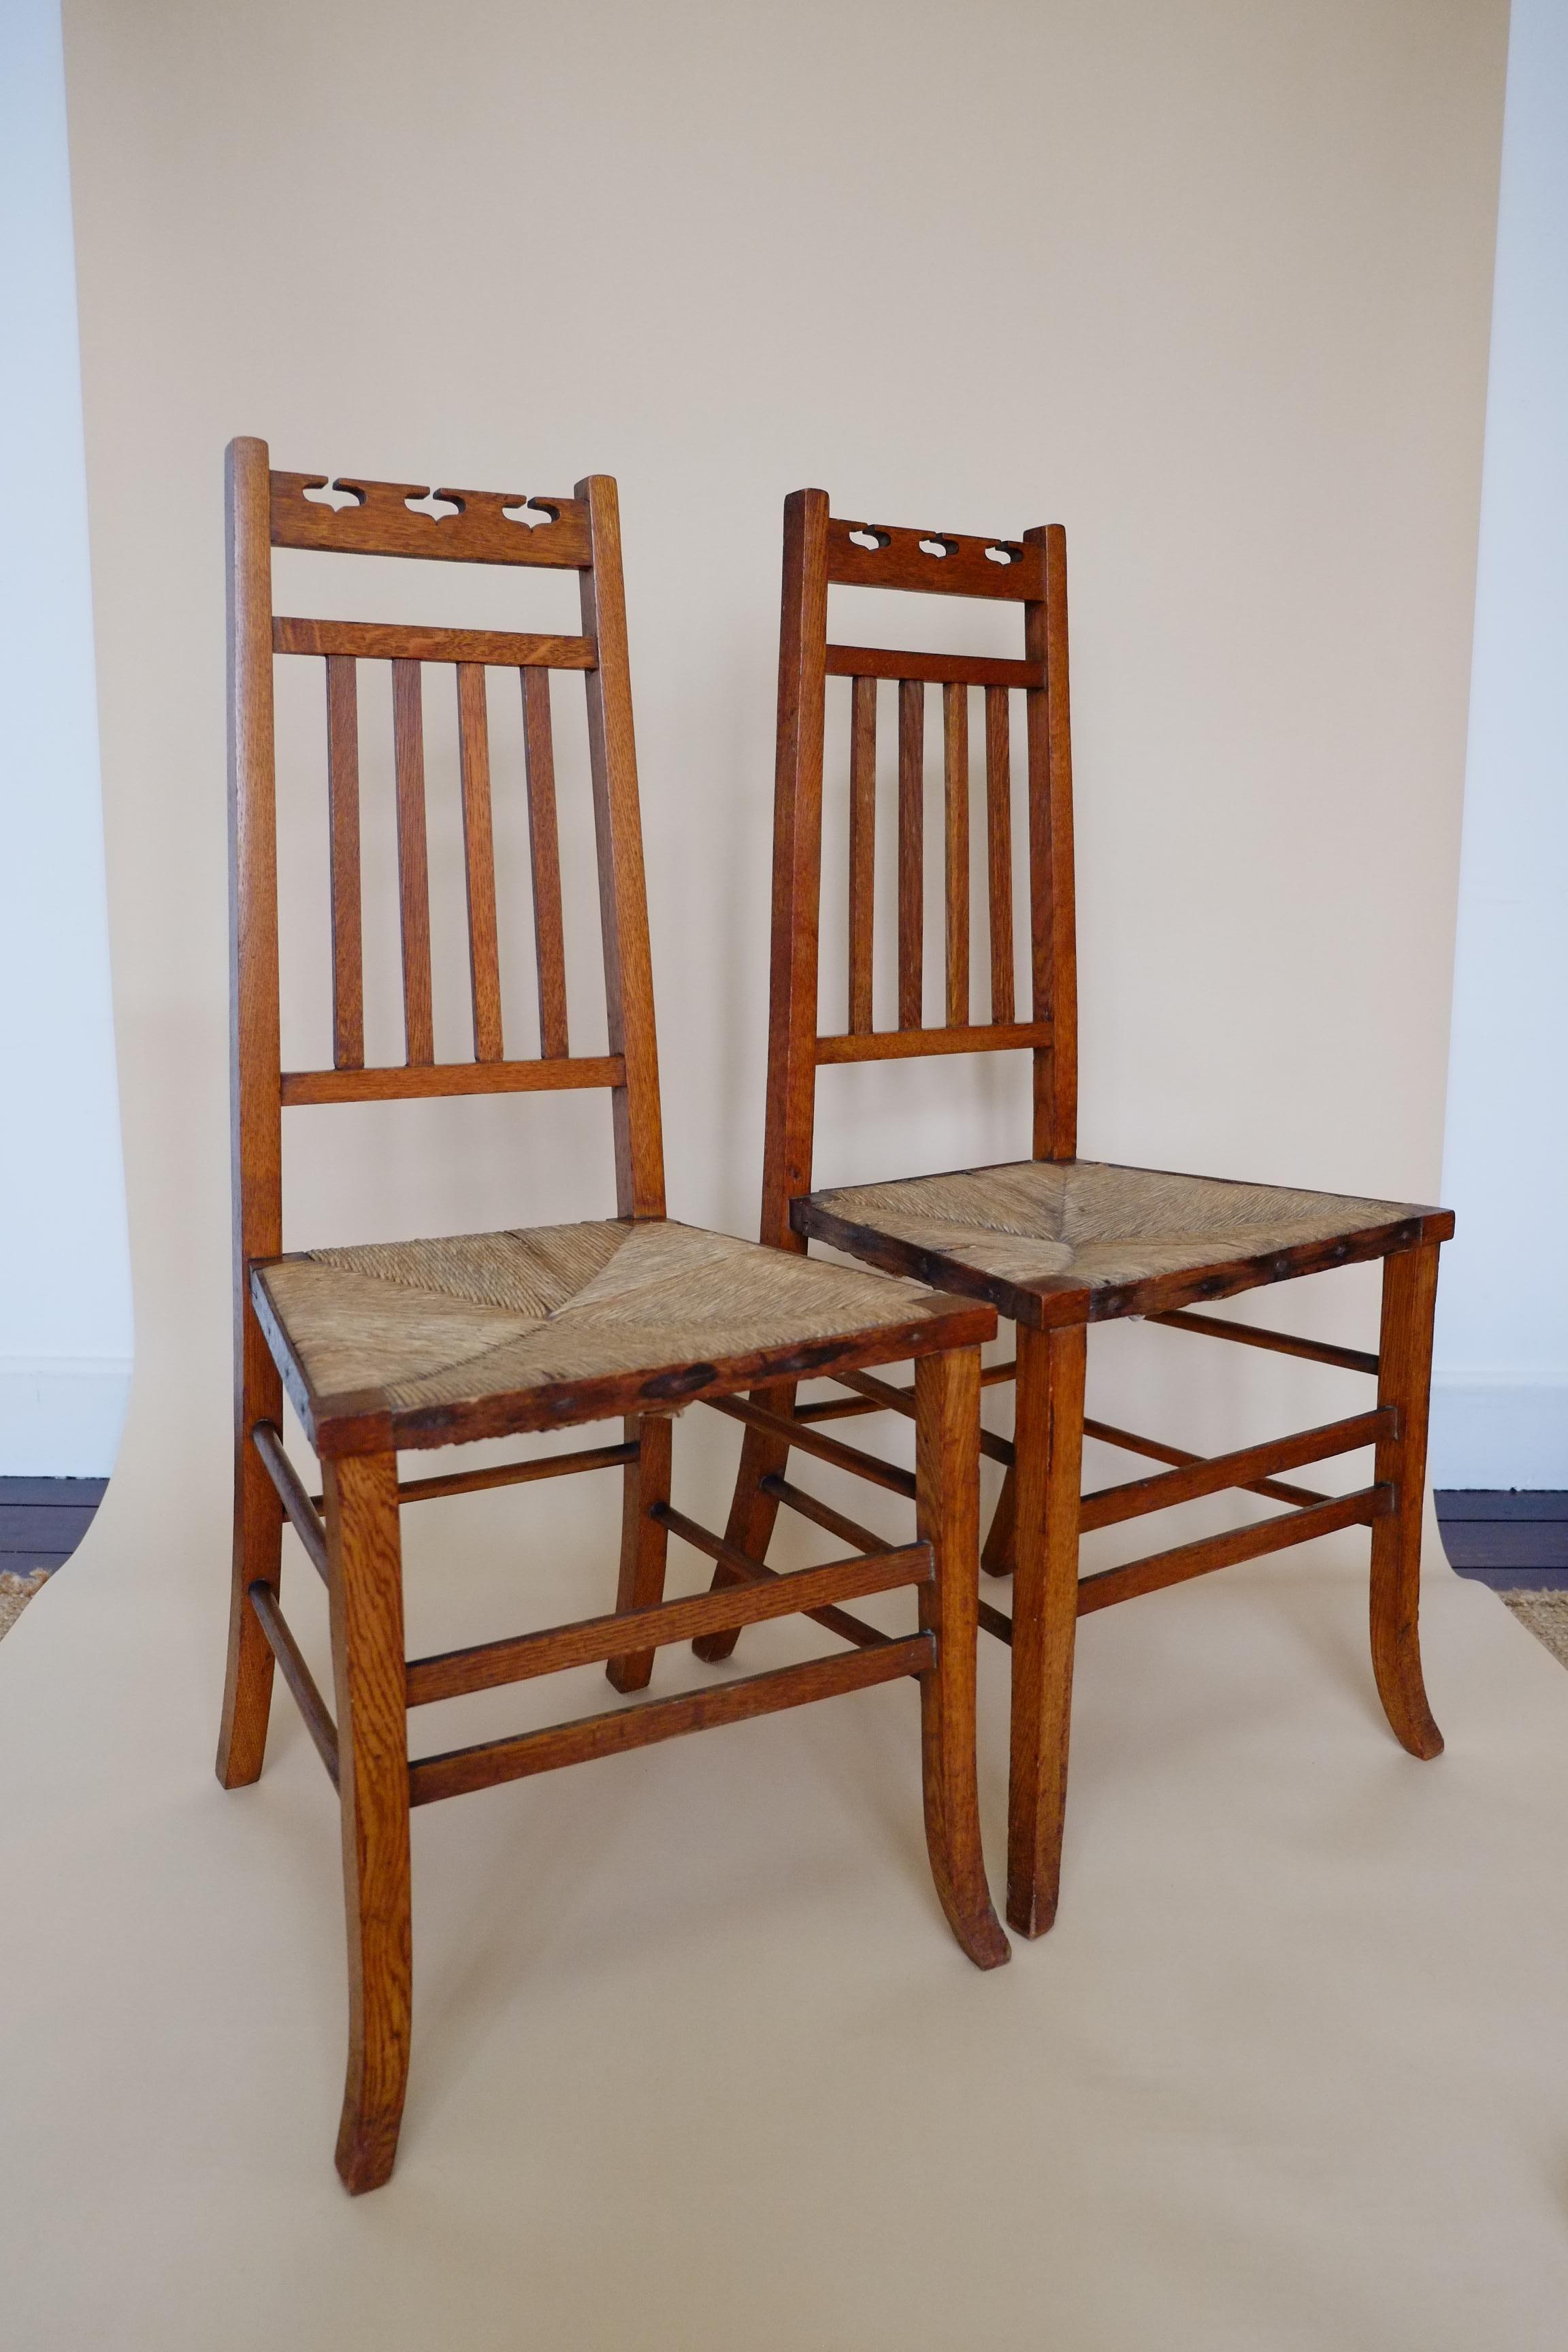 Ein atemberaubendes Paar von Arts & Crafts Beistellstühlen aus den frühen 1900er Jahren. E. A. Taylor für Wylie & Lockhead zugeschrieben. Hergestellt in Schottland. Die Stühle haben eine äußerst elegante Struktur mit schlanken, sich verjüngenden